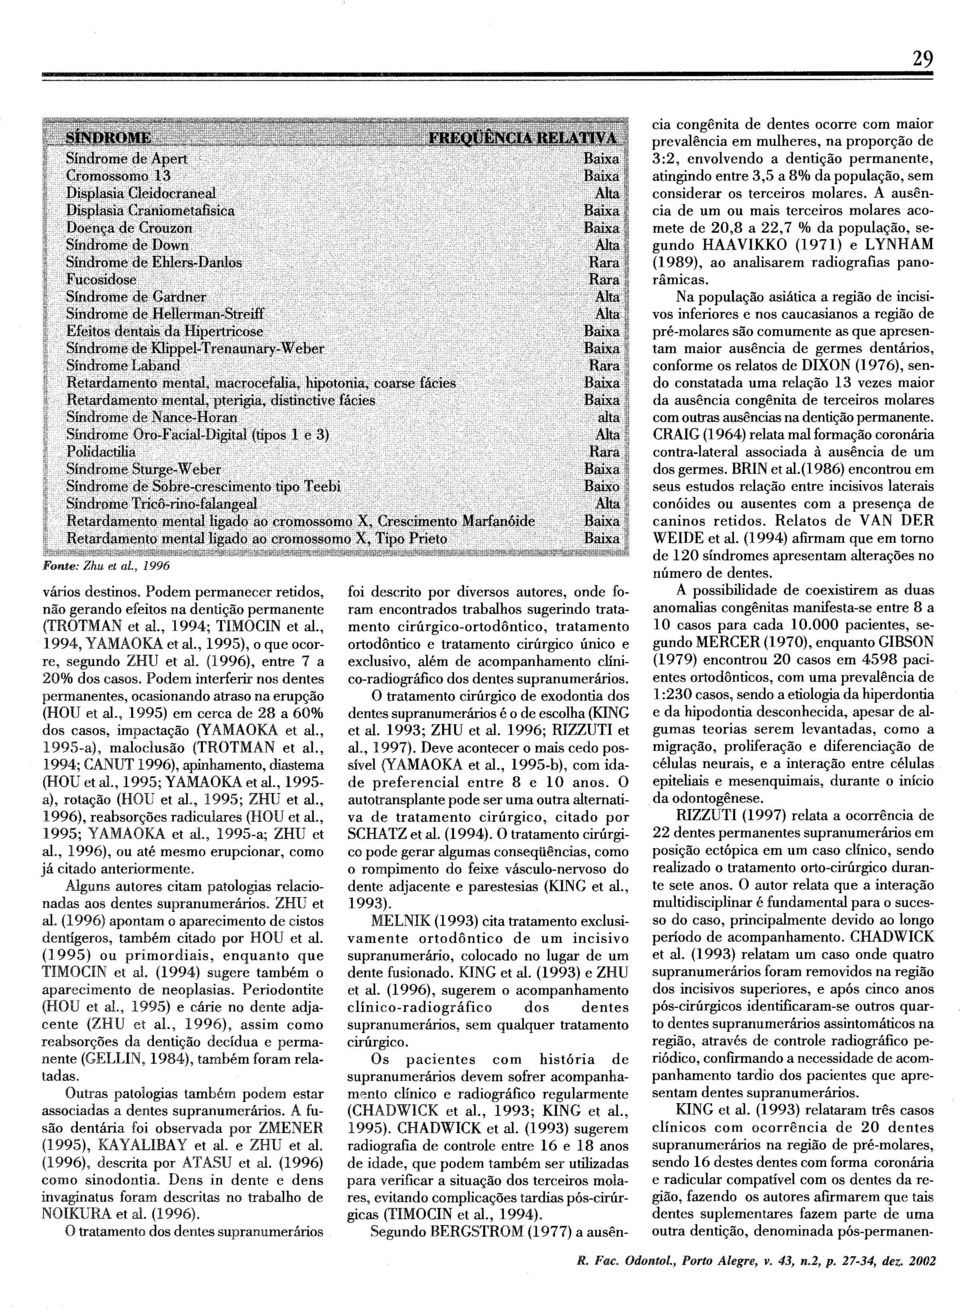 , 1995-a), maloclusão (TROTMAN et al., 1994; CANUT H996), apkhamento, diastema (HOU et al., 1995; PIAMAOU et al., 1995- a), rotação (HOU et d., 11995; ZHU et d.